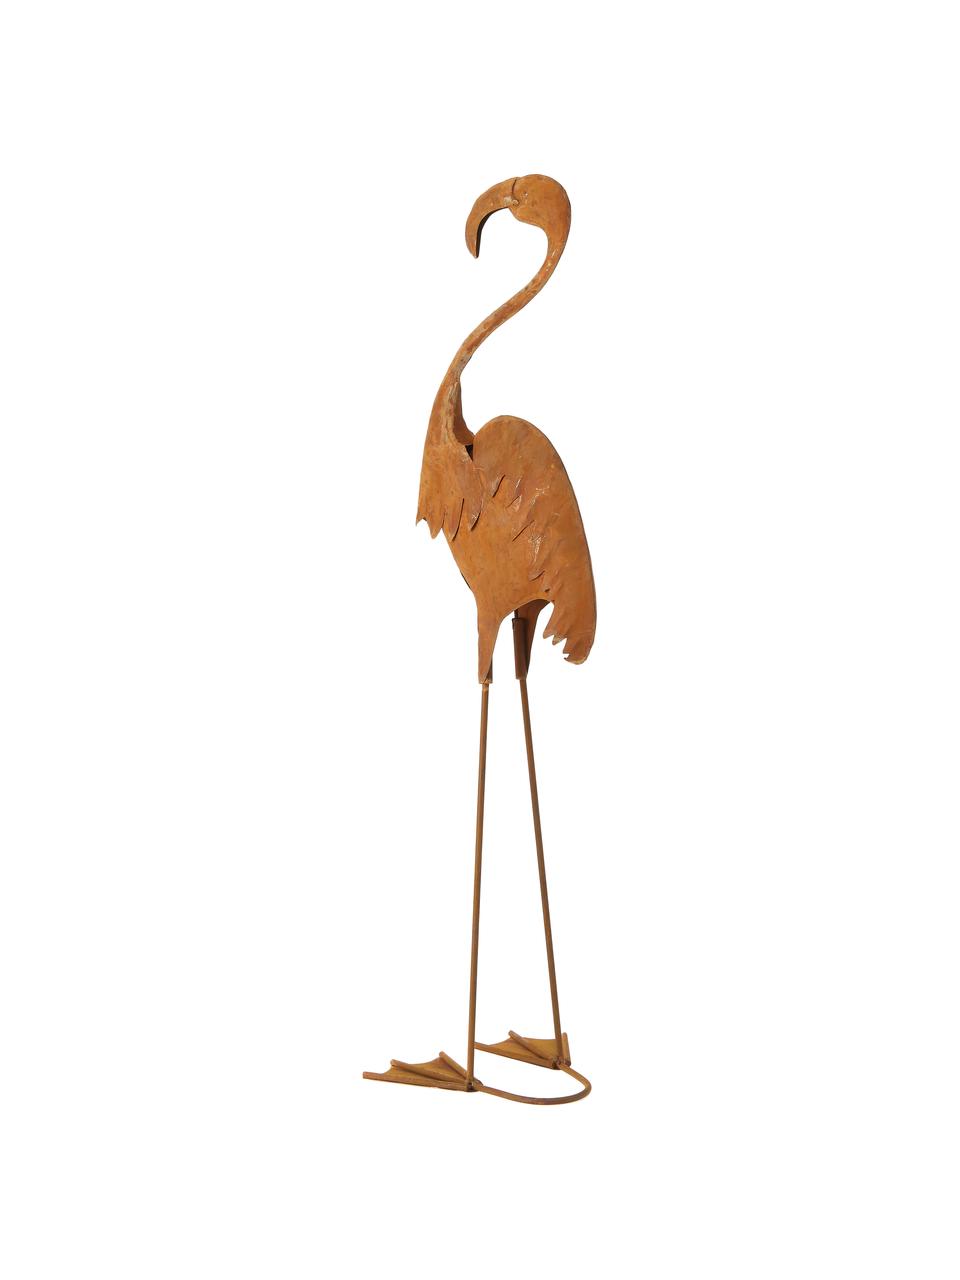 Decoratief object Flamingo, Metaalkleurig, Roodbruin, B 18 cm x H 64 cm